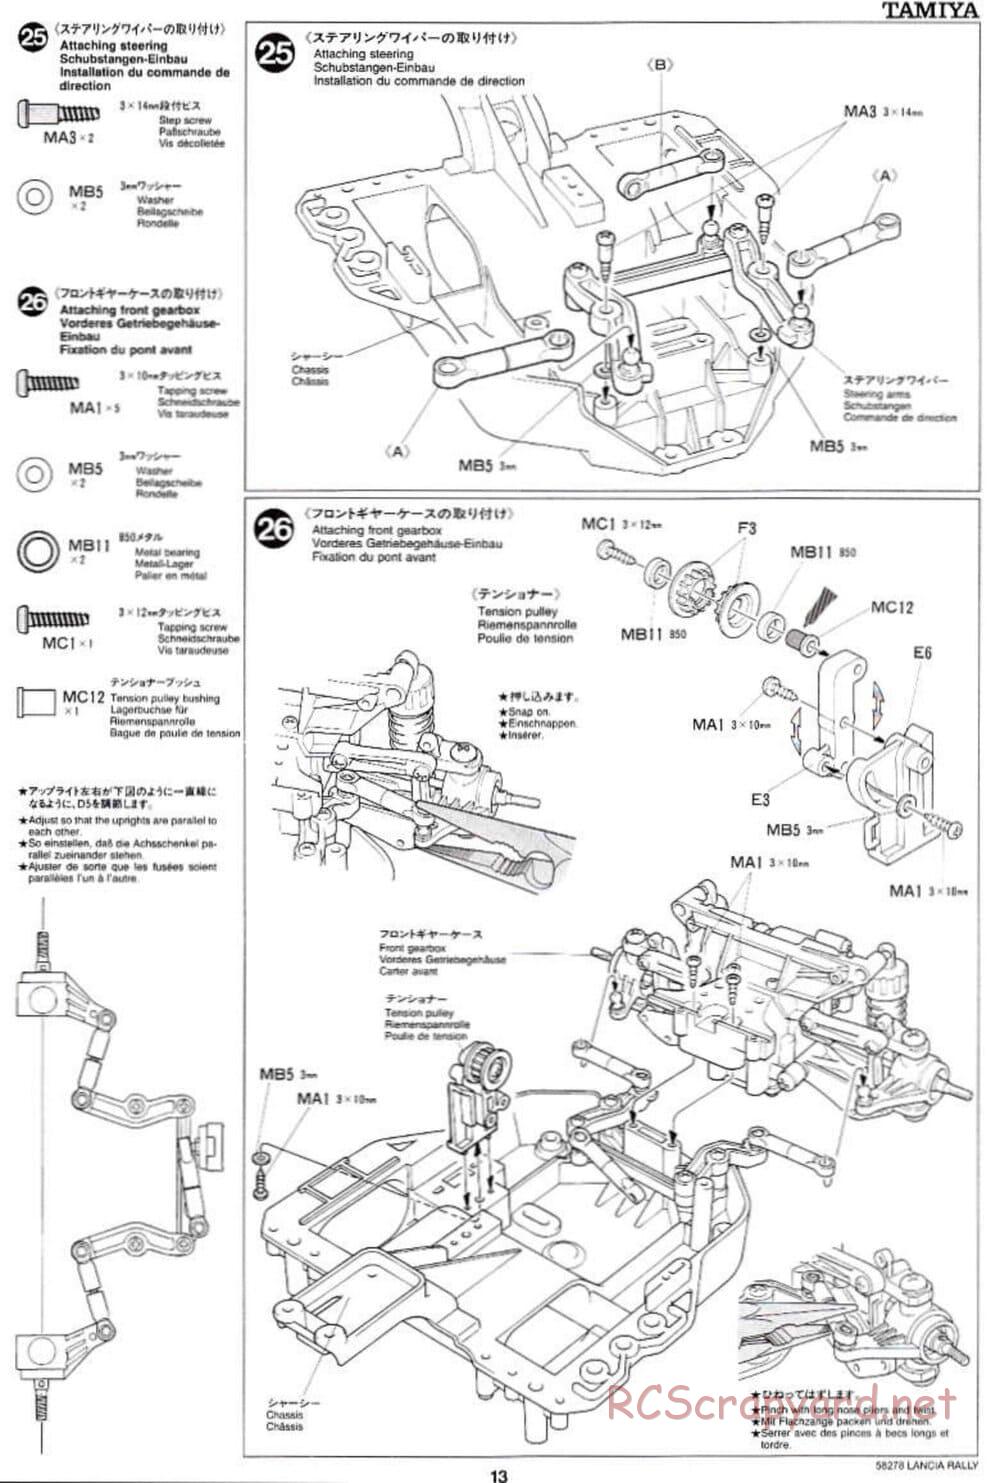 Tamiya - Lancia 037 Rally - TA-03RS Chassis - Manual - Page 13